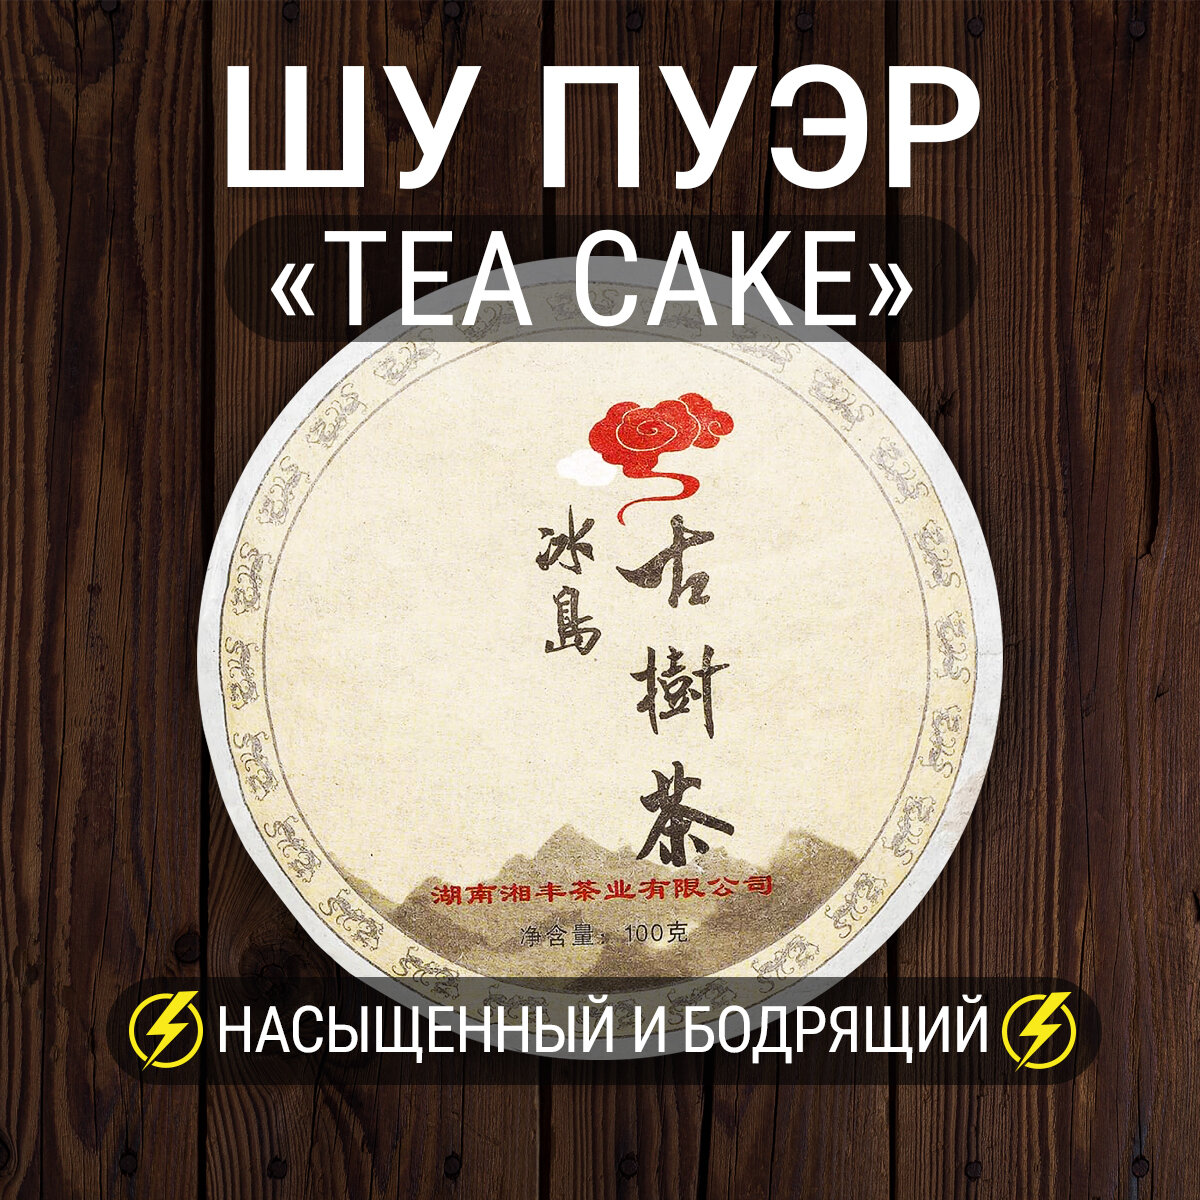 Чай листовой Правильный пуэр Tea Cake 100 г. китайский черный прессованный блин, провинция Юннань, 2017 г.